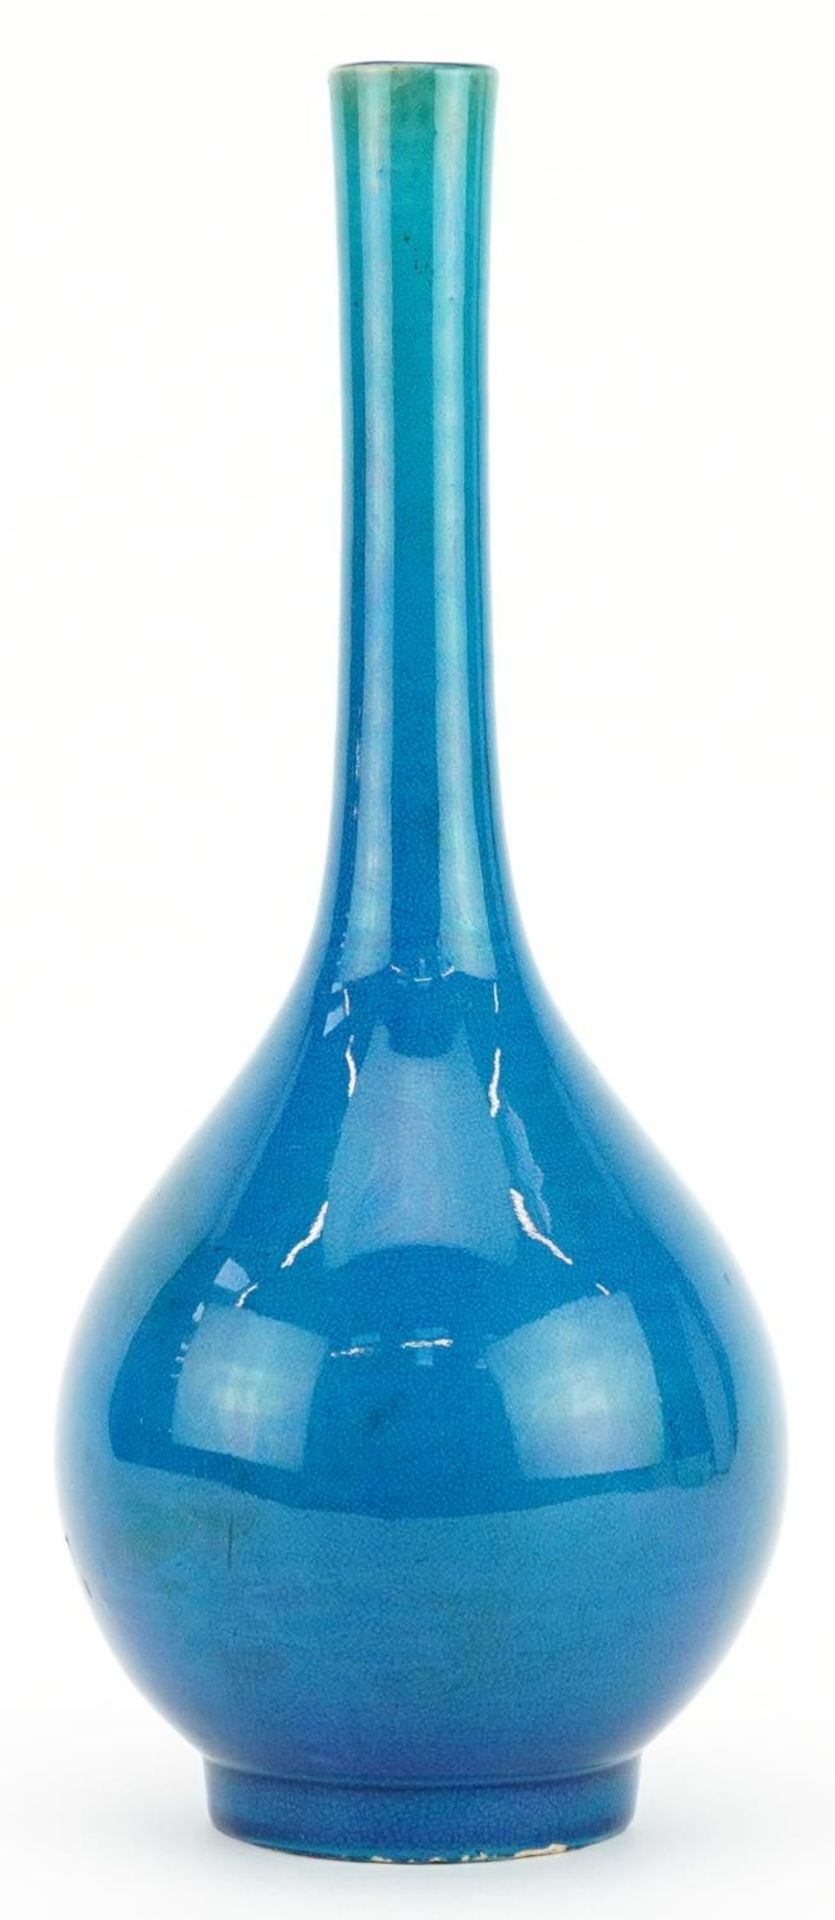 Chinese porcelain long neck bottle vase having a blue glaze, 31cm high : For further information